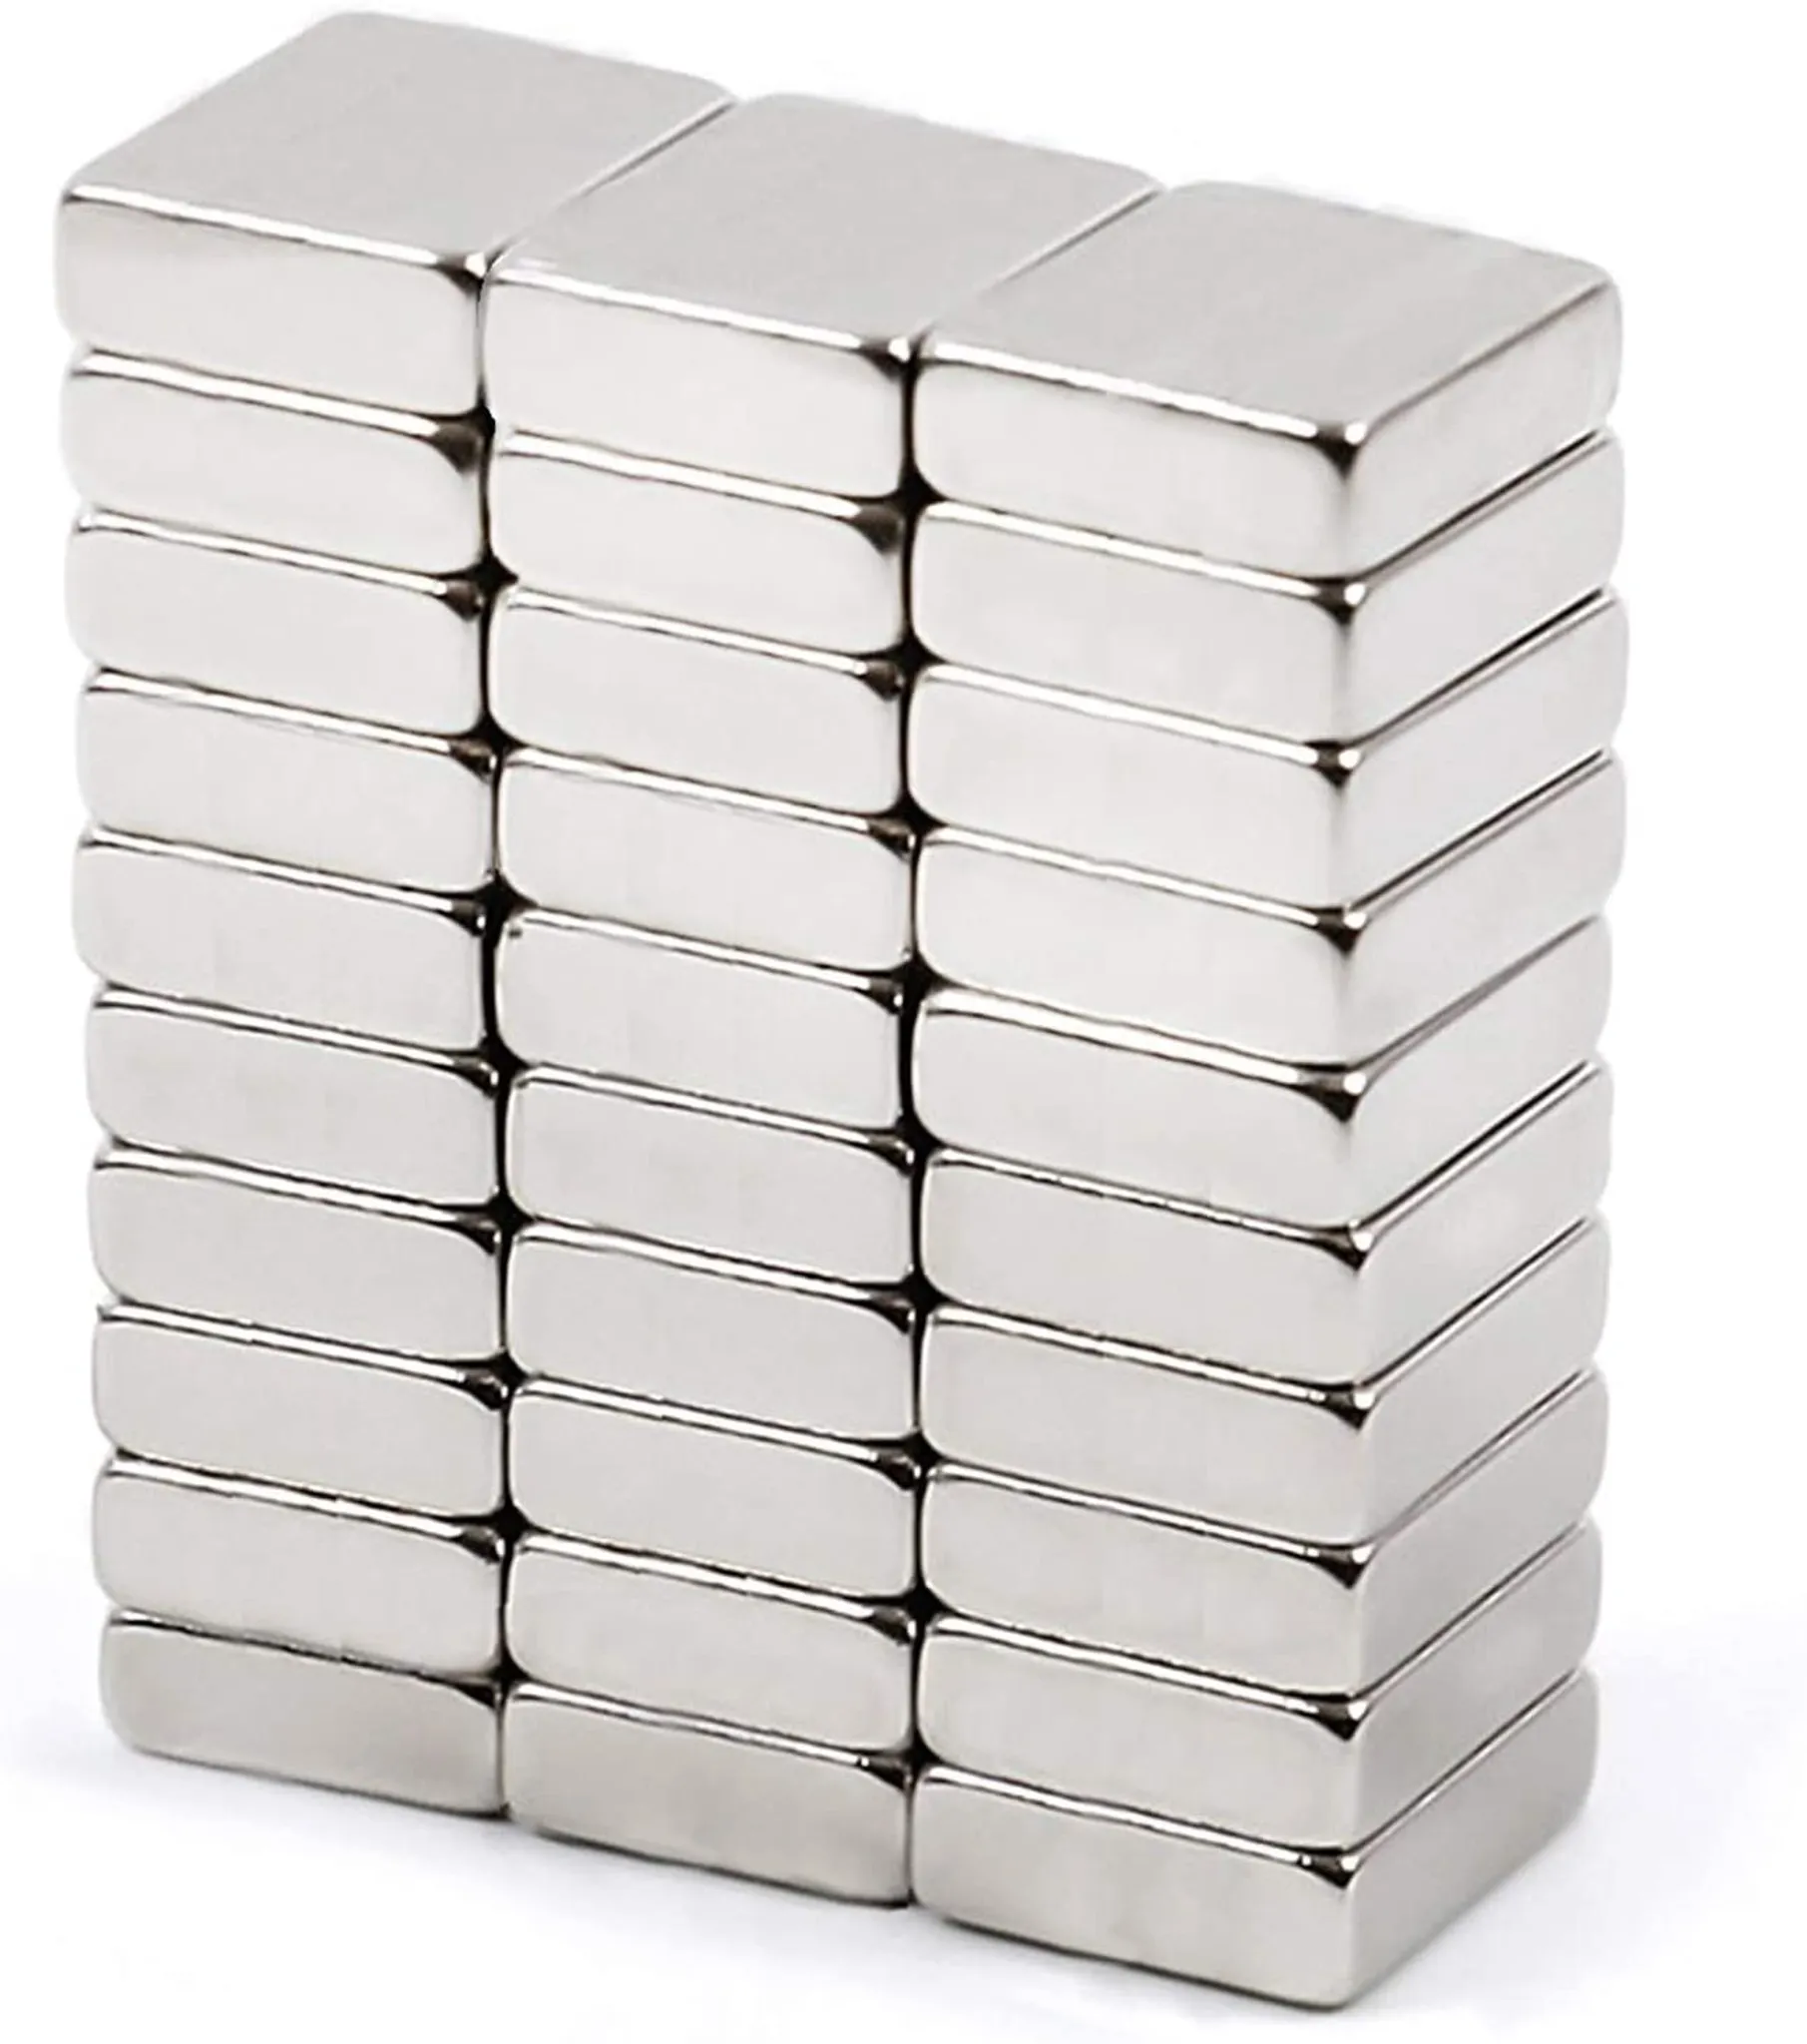 Mini Magnete 20mm x 20mm Selbstklebend Stark - Magnete für Magnettafel -  Kühlschrankmagnete - Kleine Magnete für Whiteboard - Tafelmagnete 